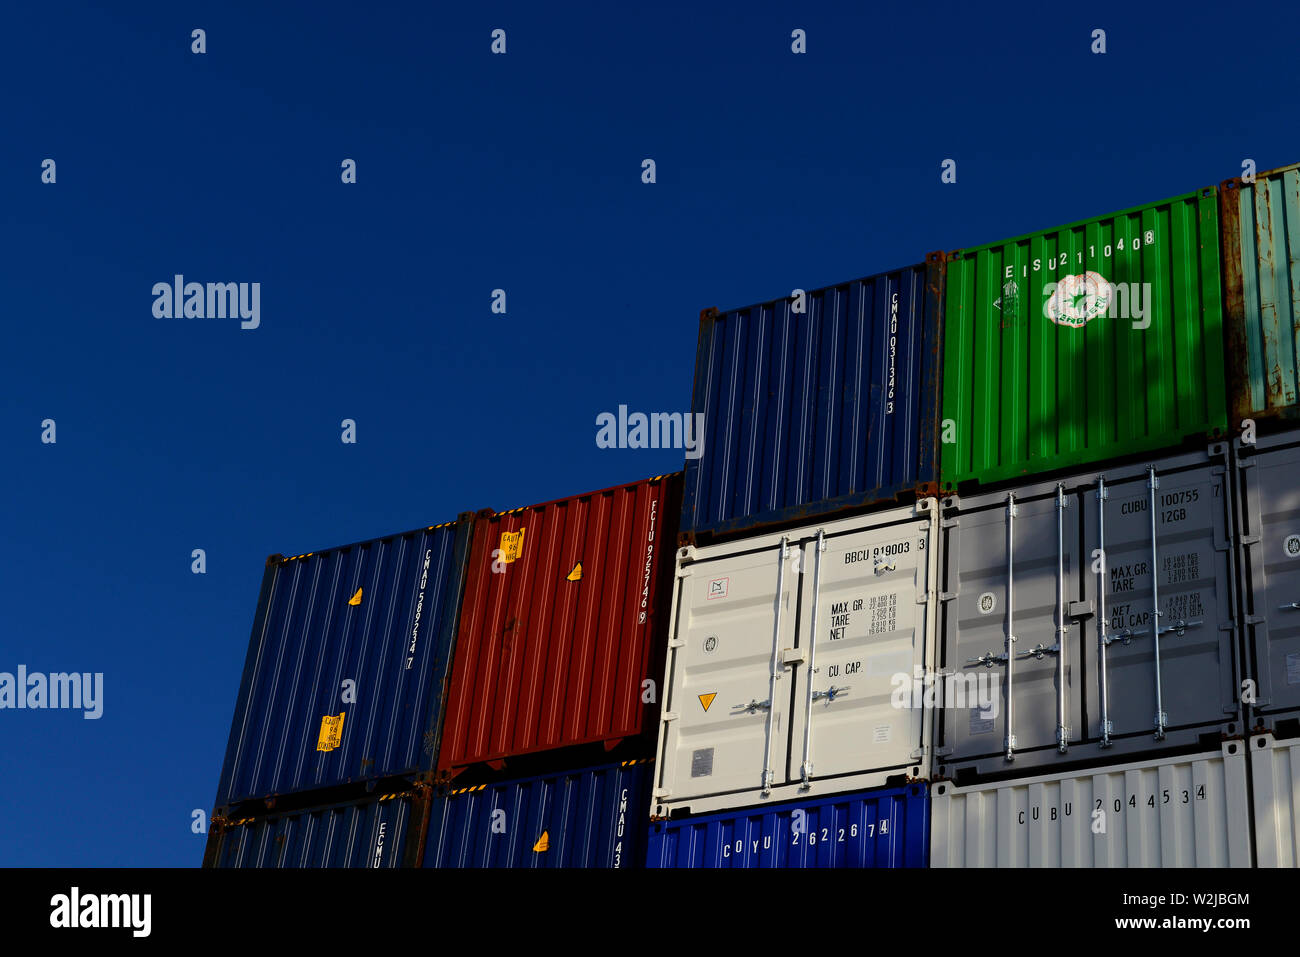 Indischer Ozean, internationale Gewässer - Dezember 31, 2014: Blick auf die Container auf Deck des Containerschiff CMA CGM Vela verstaut (imo Nr. 9354923) Stockfoto